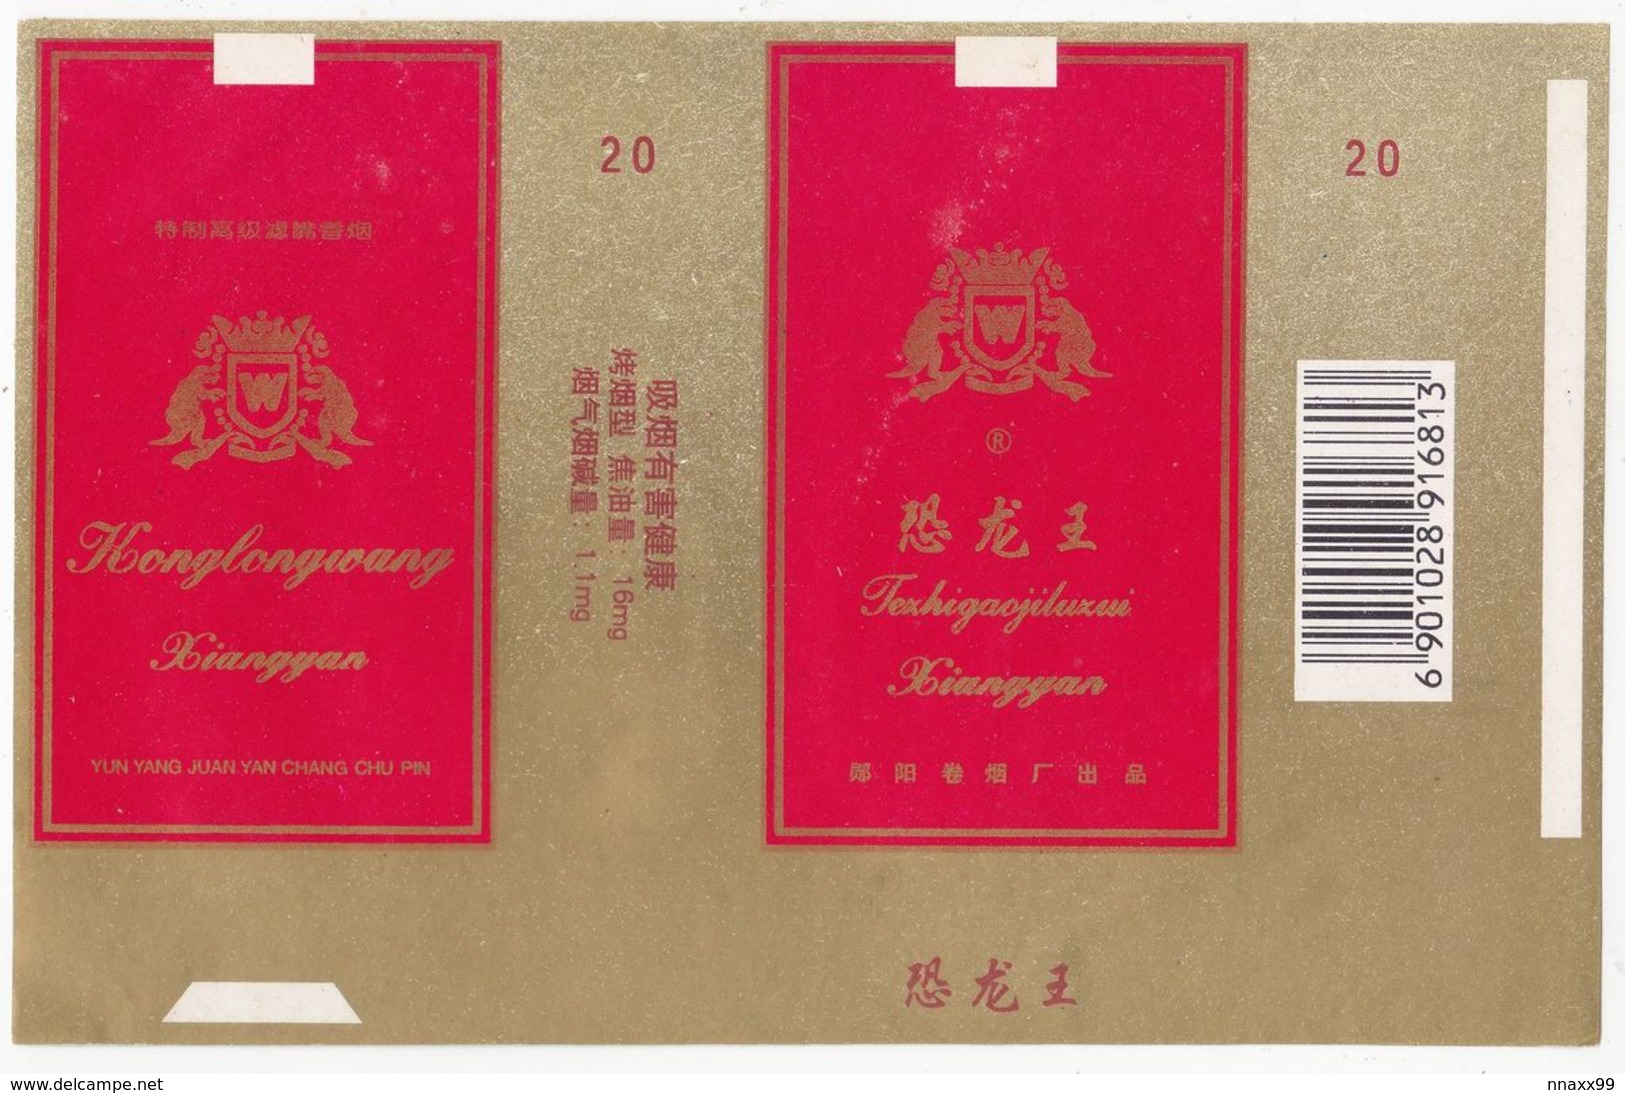 Dinosaur - Theropoda, KONGLONGWANG Cigarette Box, Soft, Gold & Red, Yunyang Cigarette Factory, Hubei, China - Estuches Para Cigarrillos (vacios)